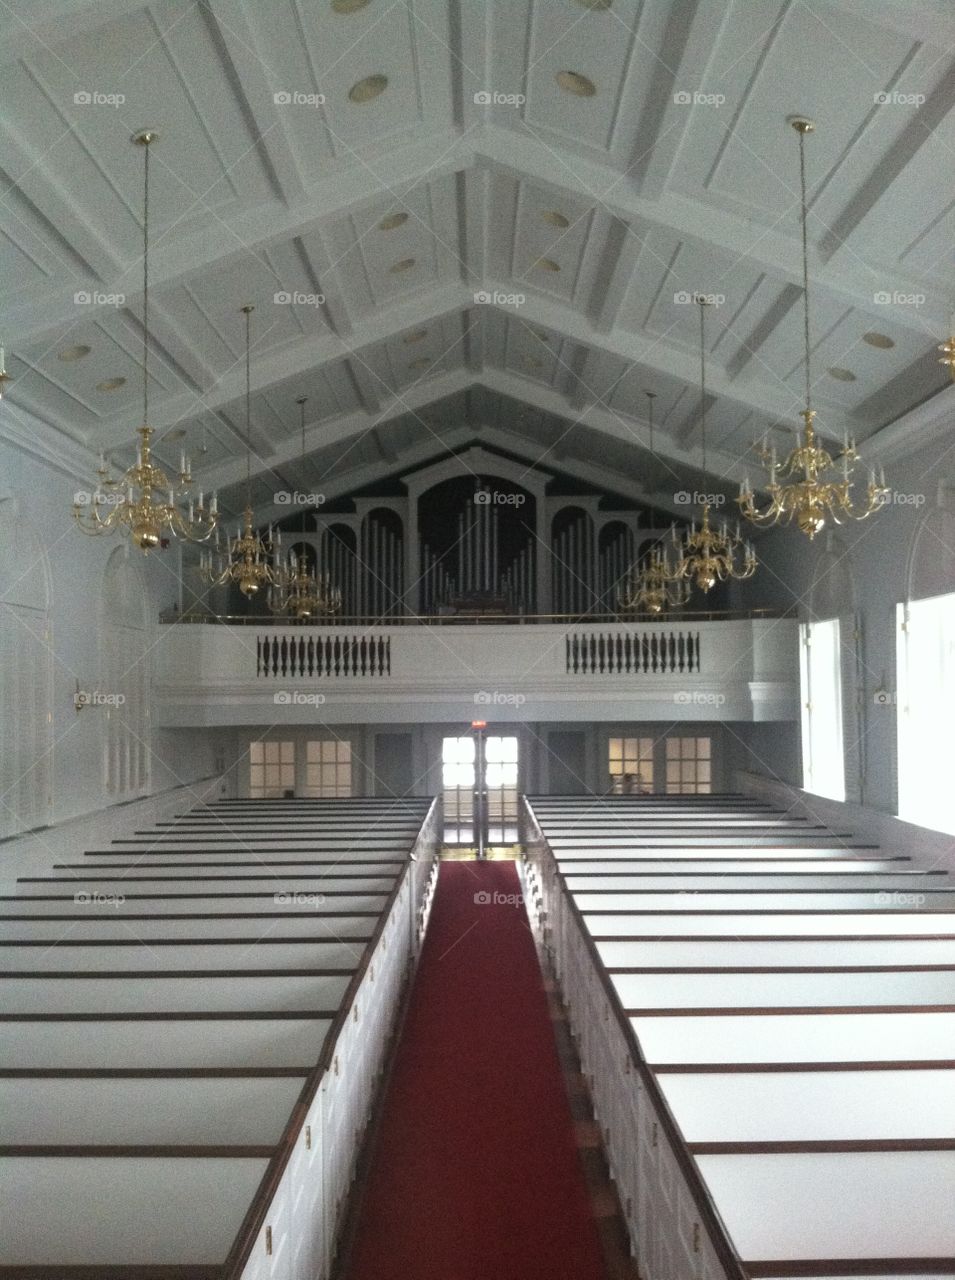 Broadus Chapel